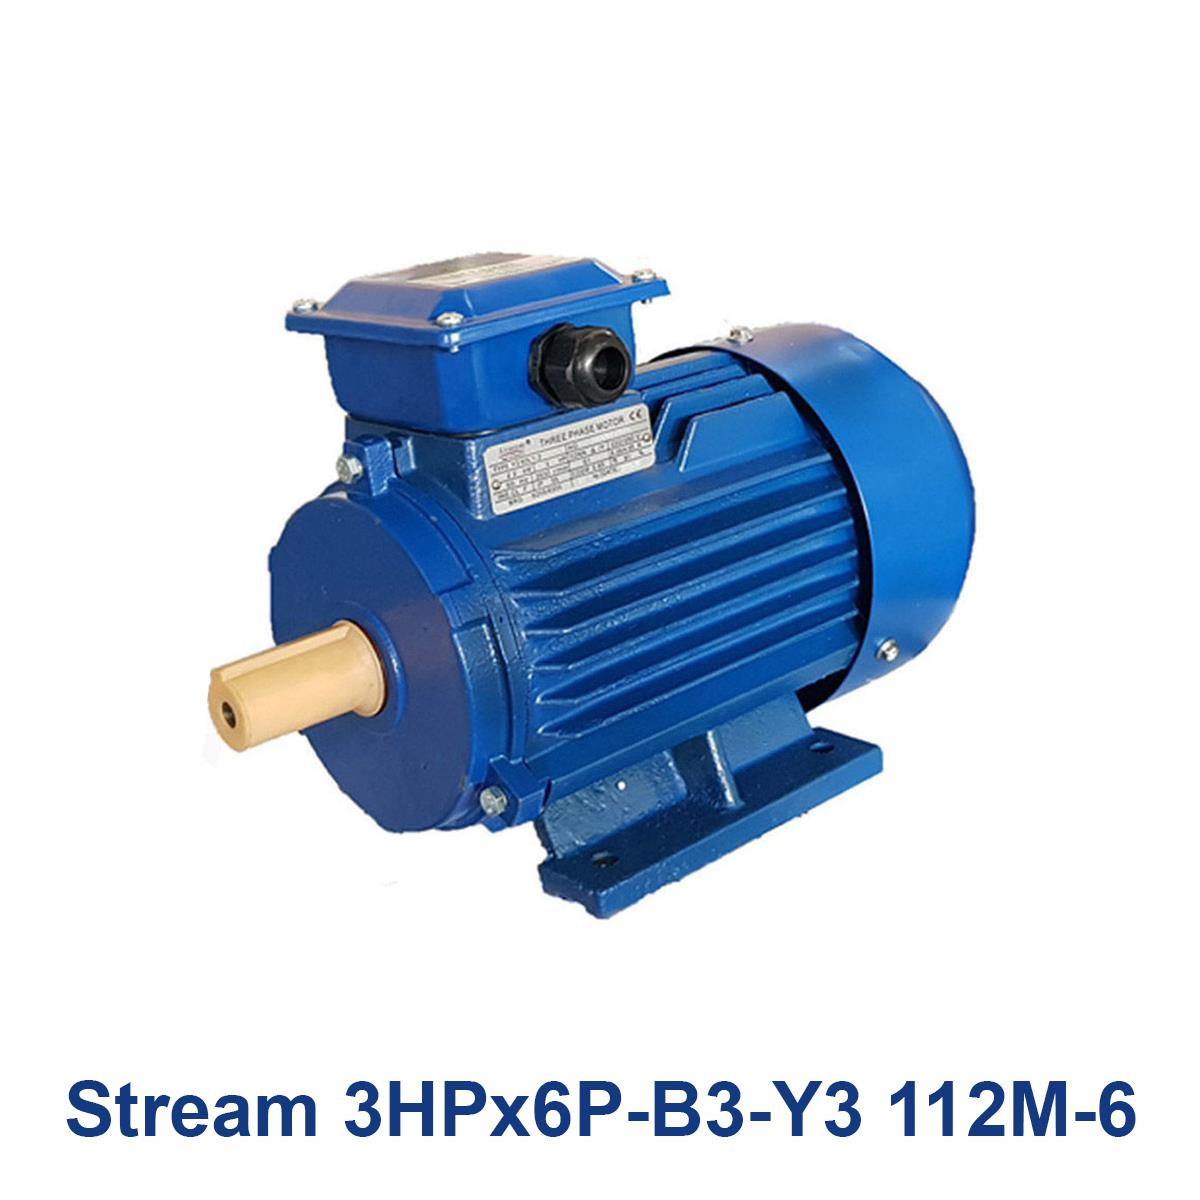 Stream-3HPx6P-B3-Y3-112M-6